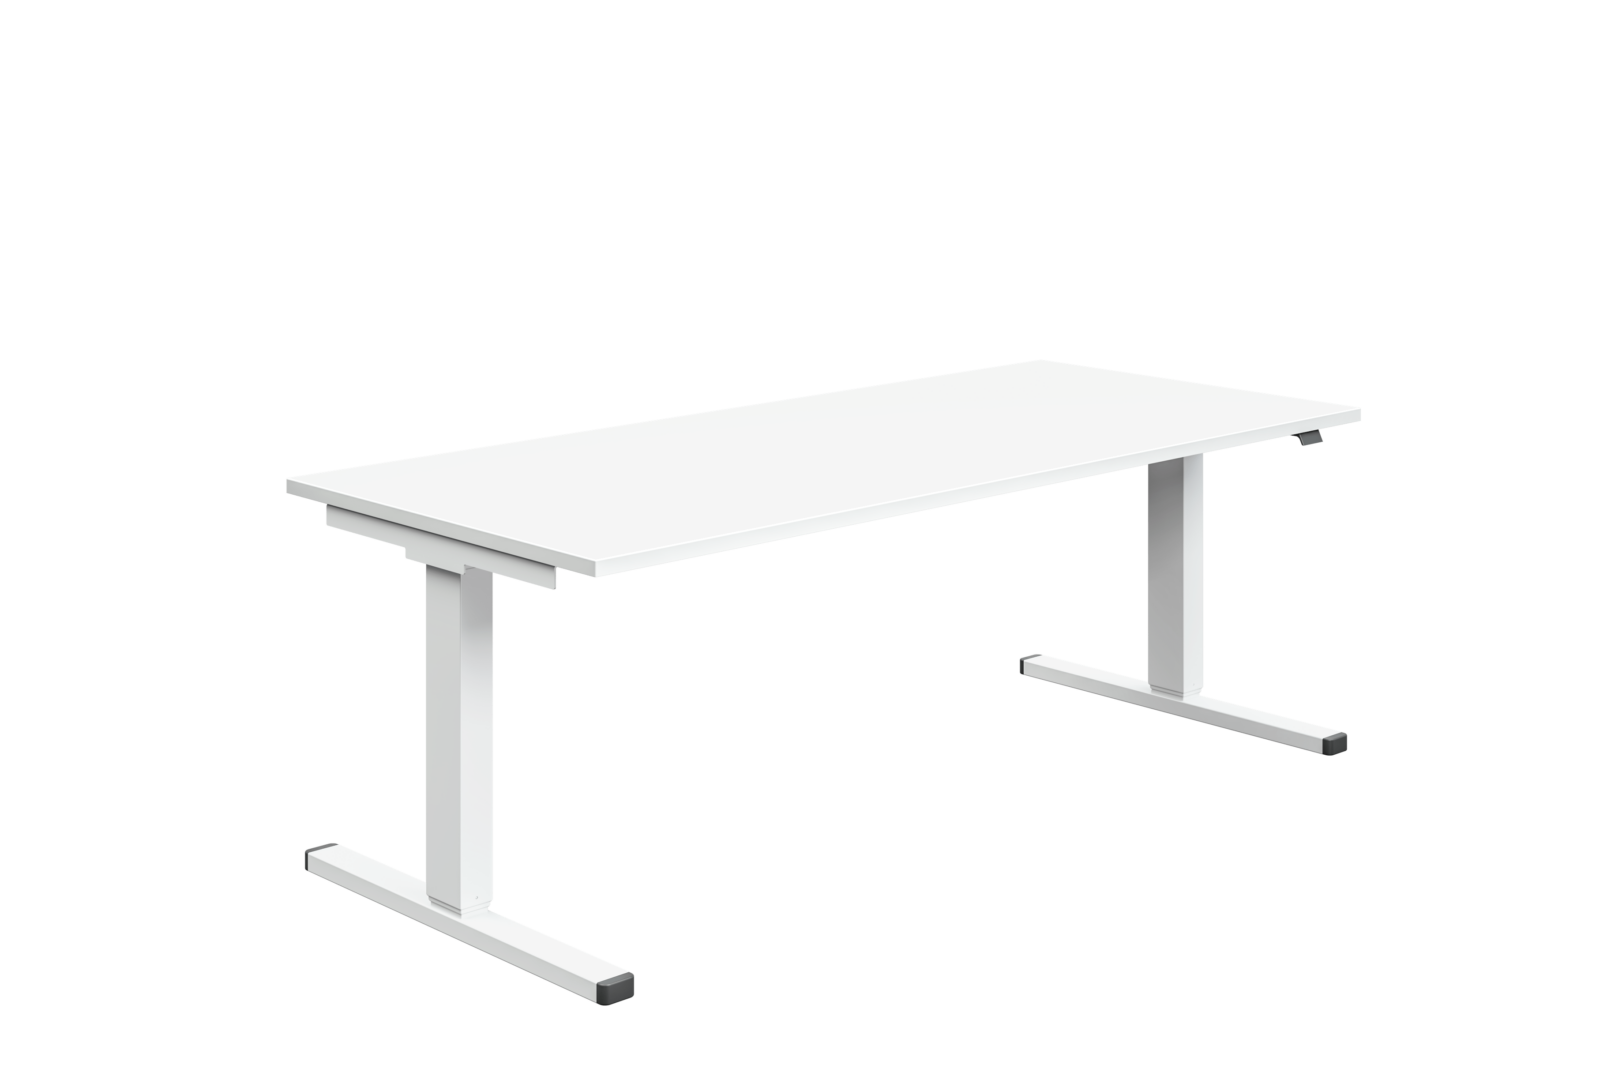 Das Bild zeigt einen höhenverstellbaren Schreibtisch der Serie Mono. Das Gestell und die Tischplatte sind weiß. Die Endkappen der Fußausleger sind aus schwarzem Kunststoff.